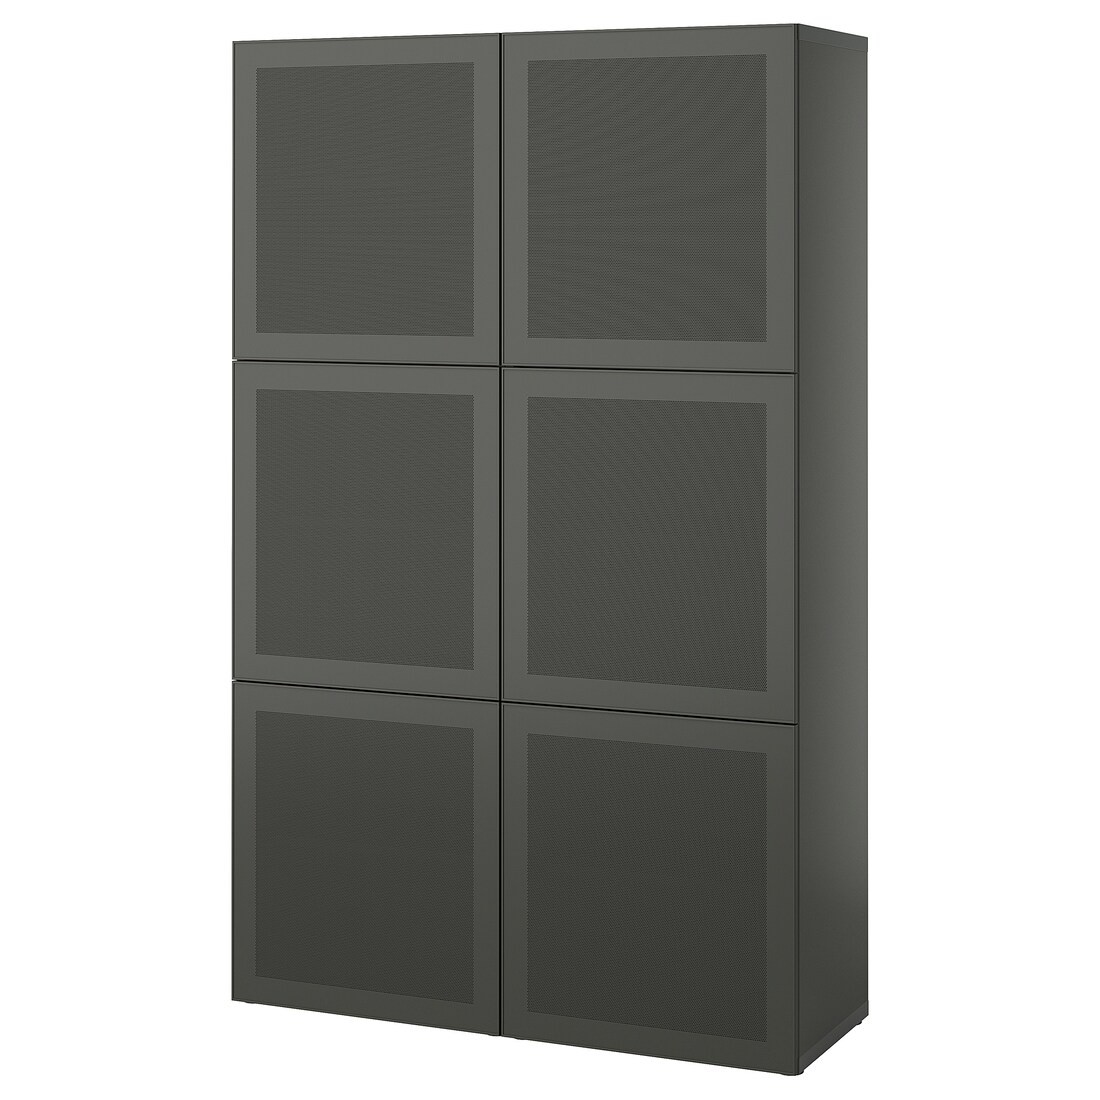 BESTÅ Комбінація для зберігання з дверцятами, темно-сірий / Mörtviken темно-сірий, 120x42x193 см